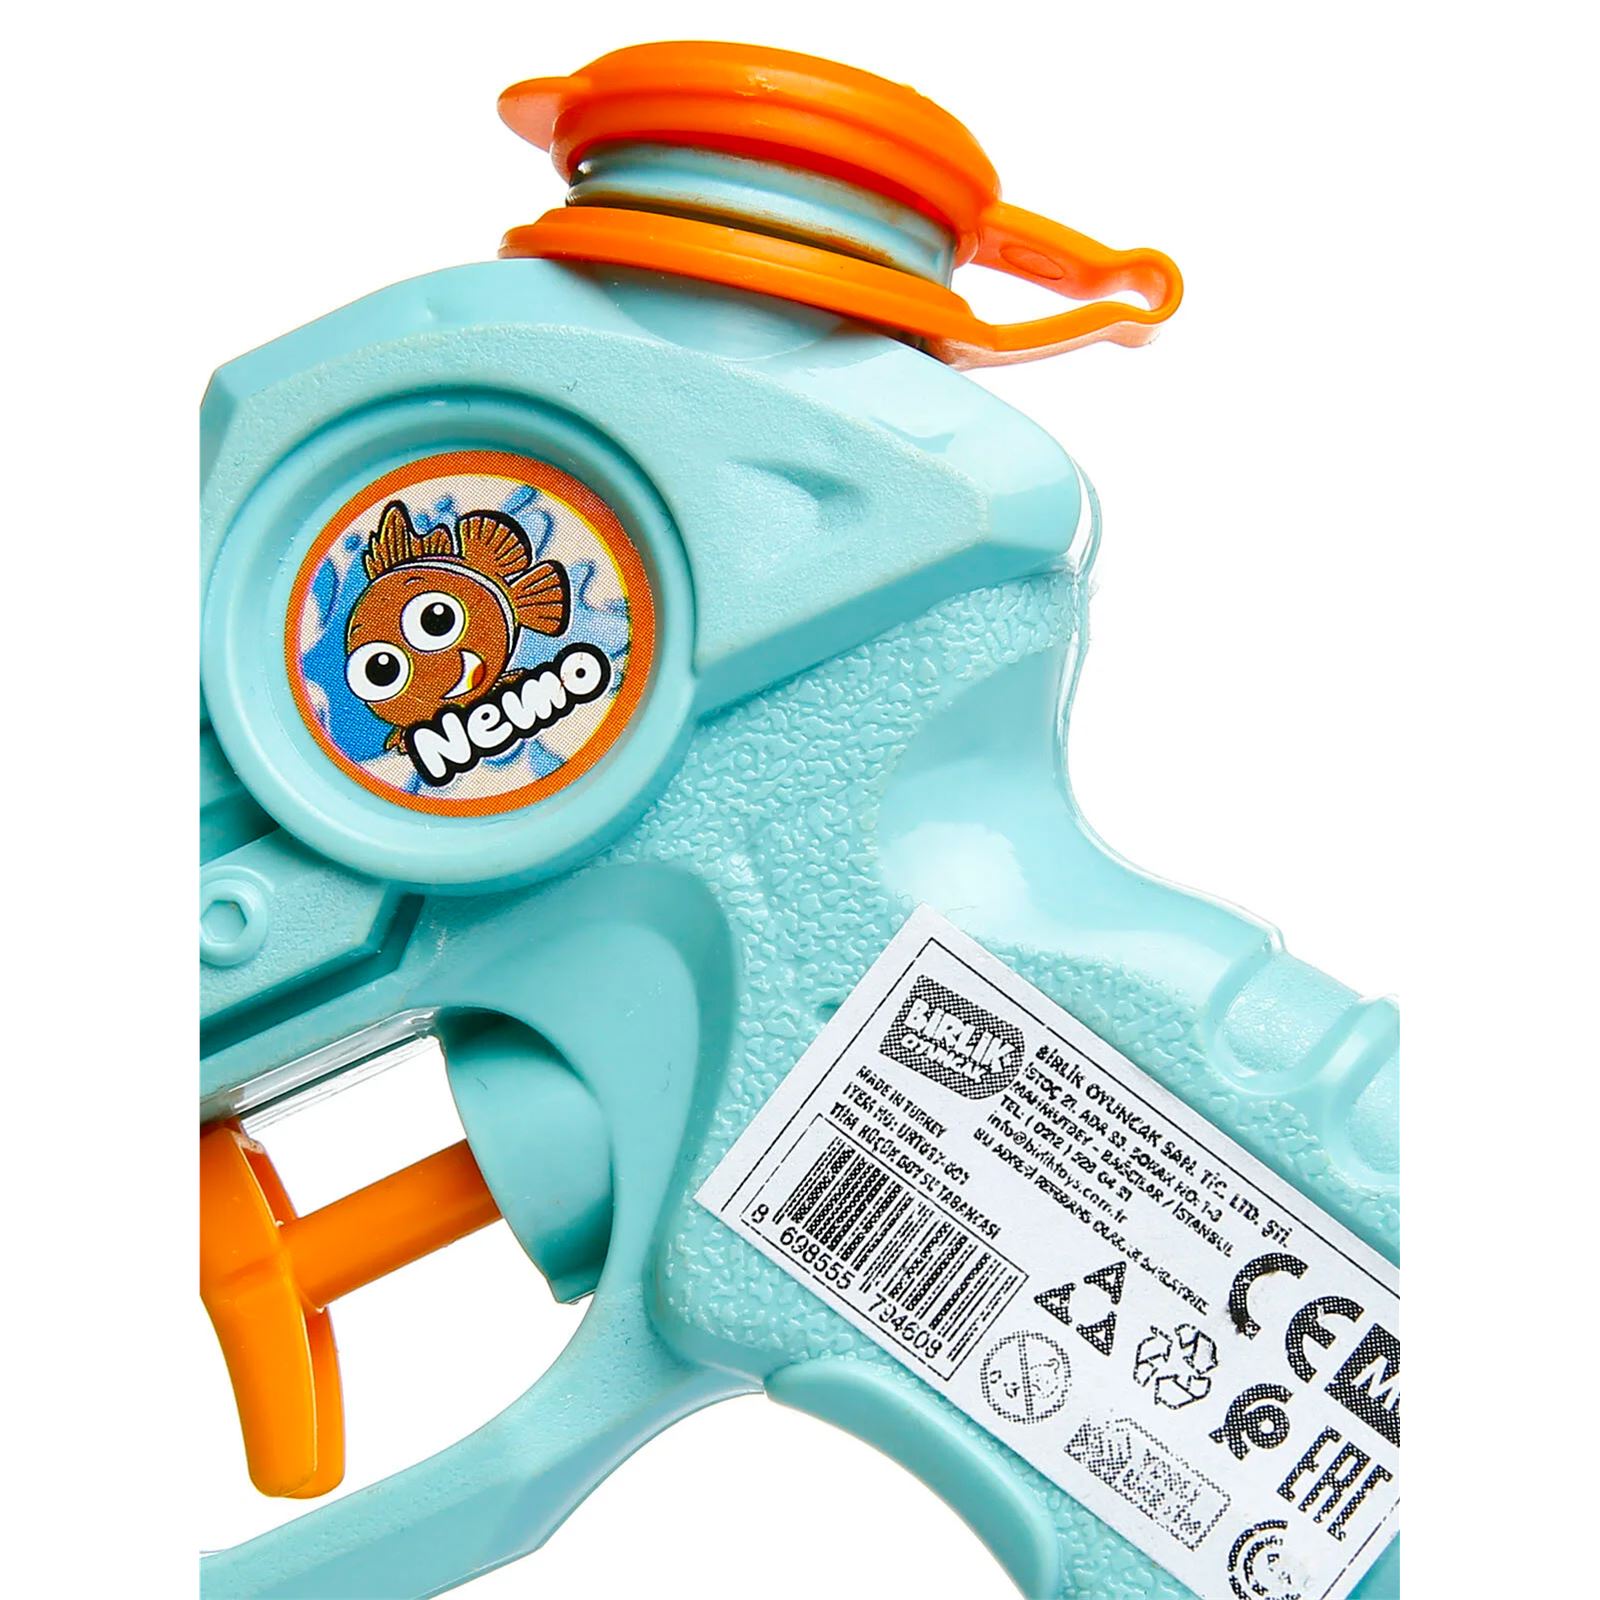 Birlik Oyuncak Timm Water Blaster Nemo Küçük Boy Su Tabancası Turkuaz